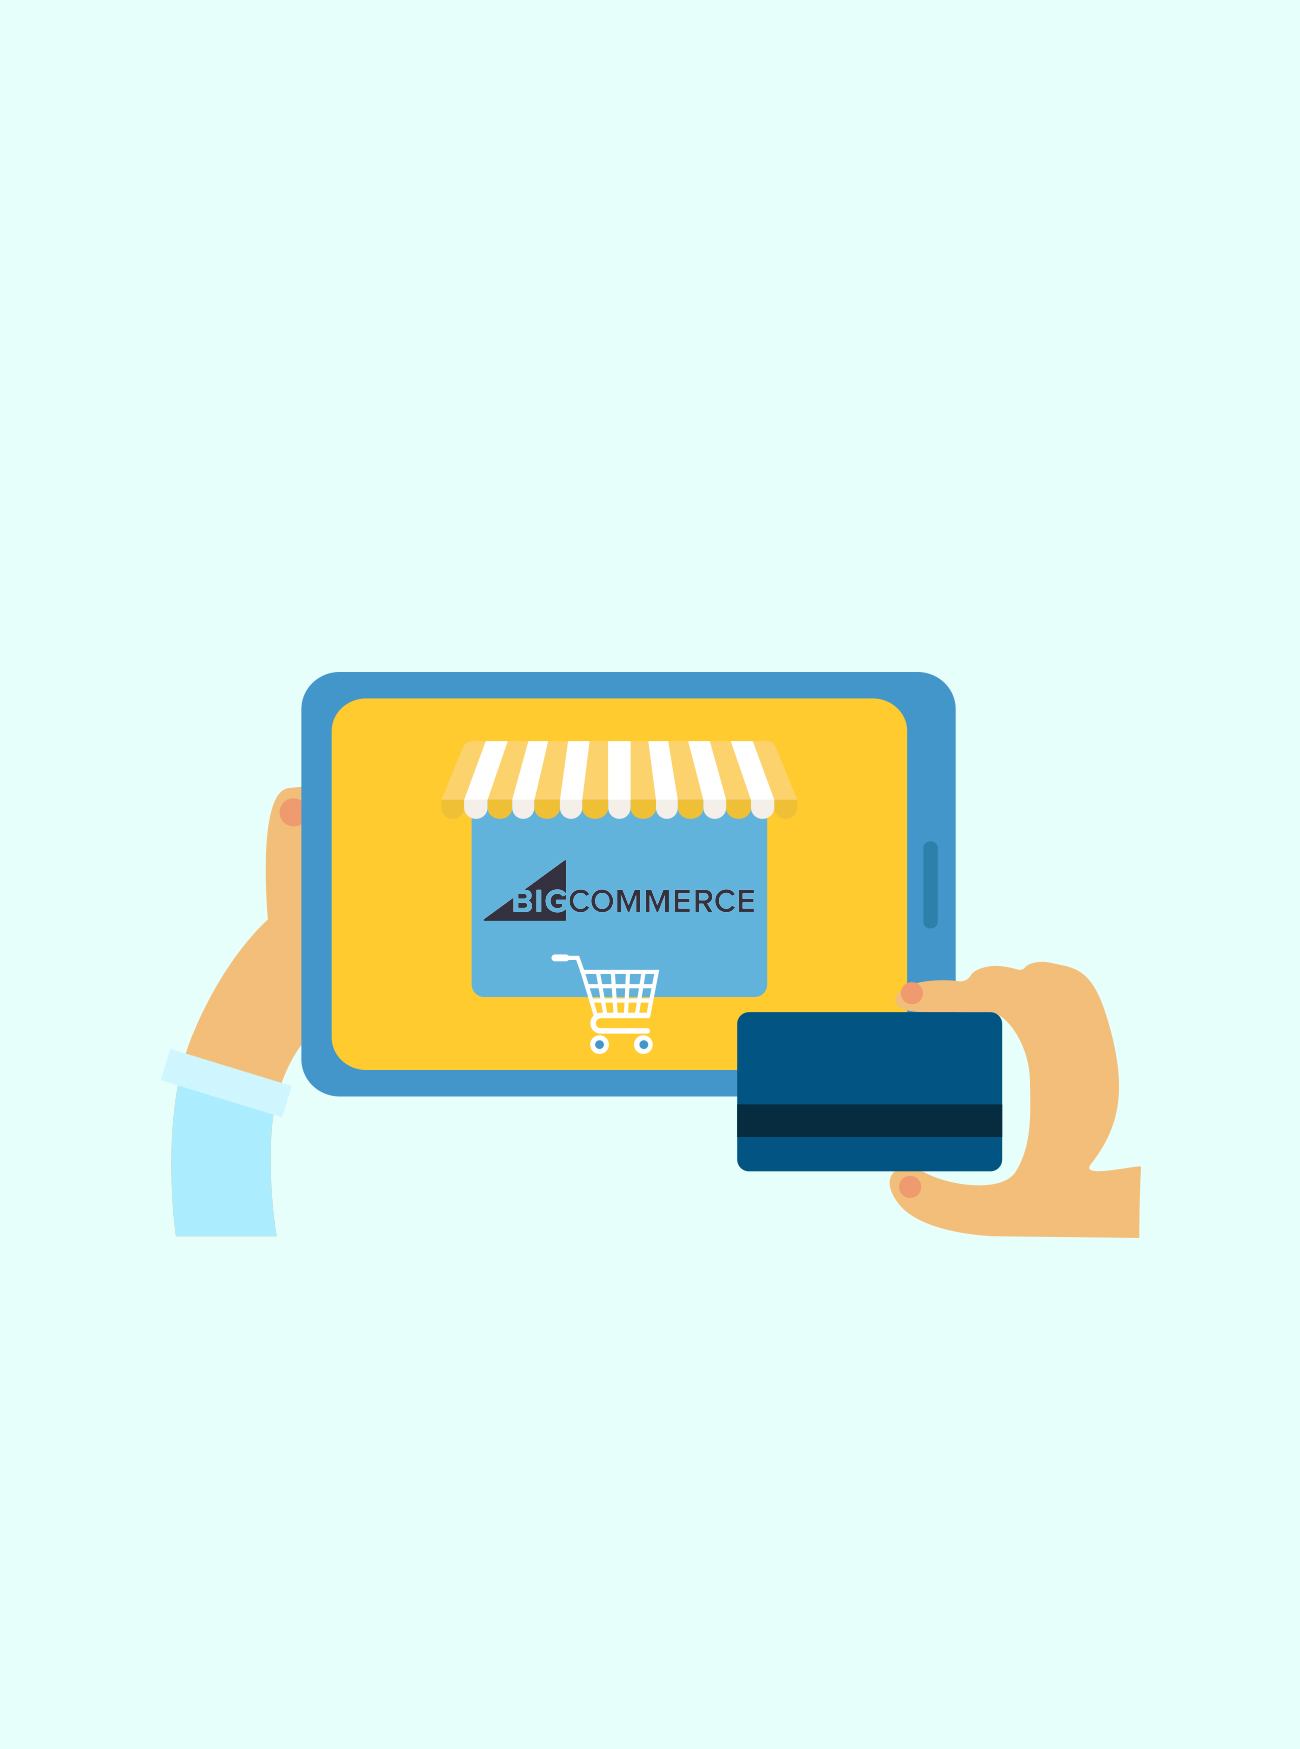 vserve | Shopify eCommerce Development Services